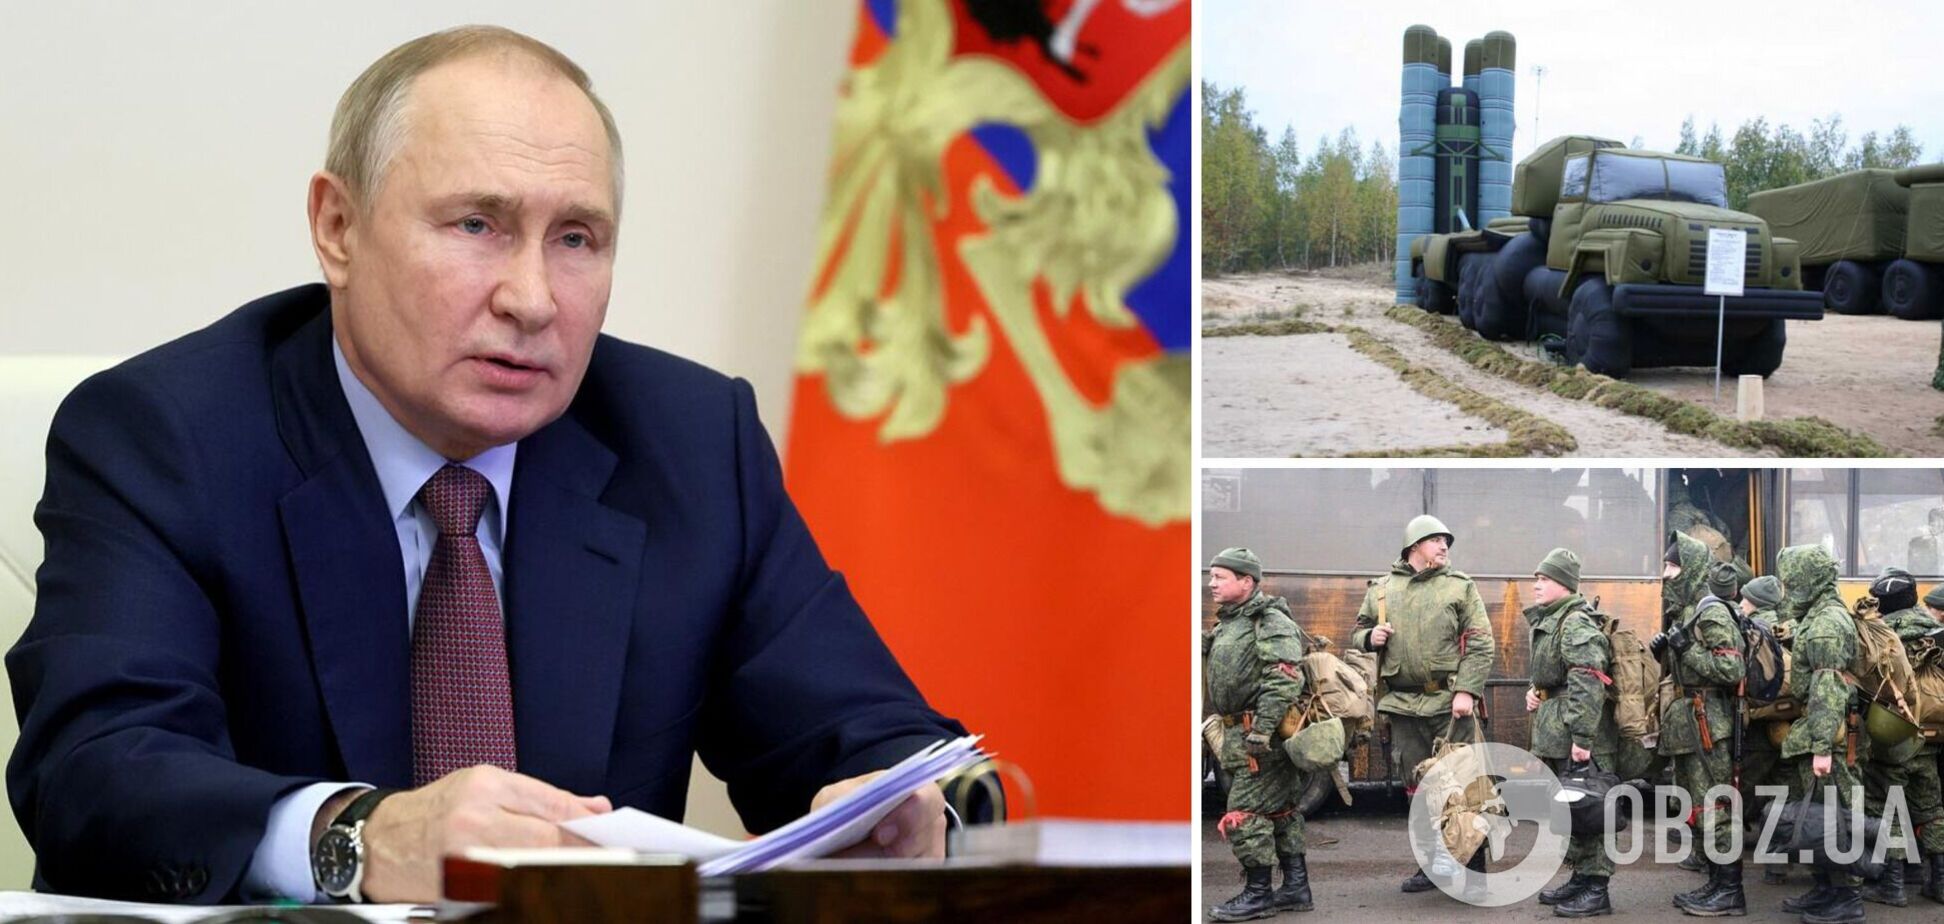 'Ми полускаємо і Patriot': Путін заявив, що хоче закінчити війну в Україні, але його обманюють із мирними переговорами 